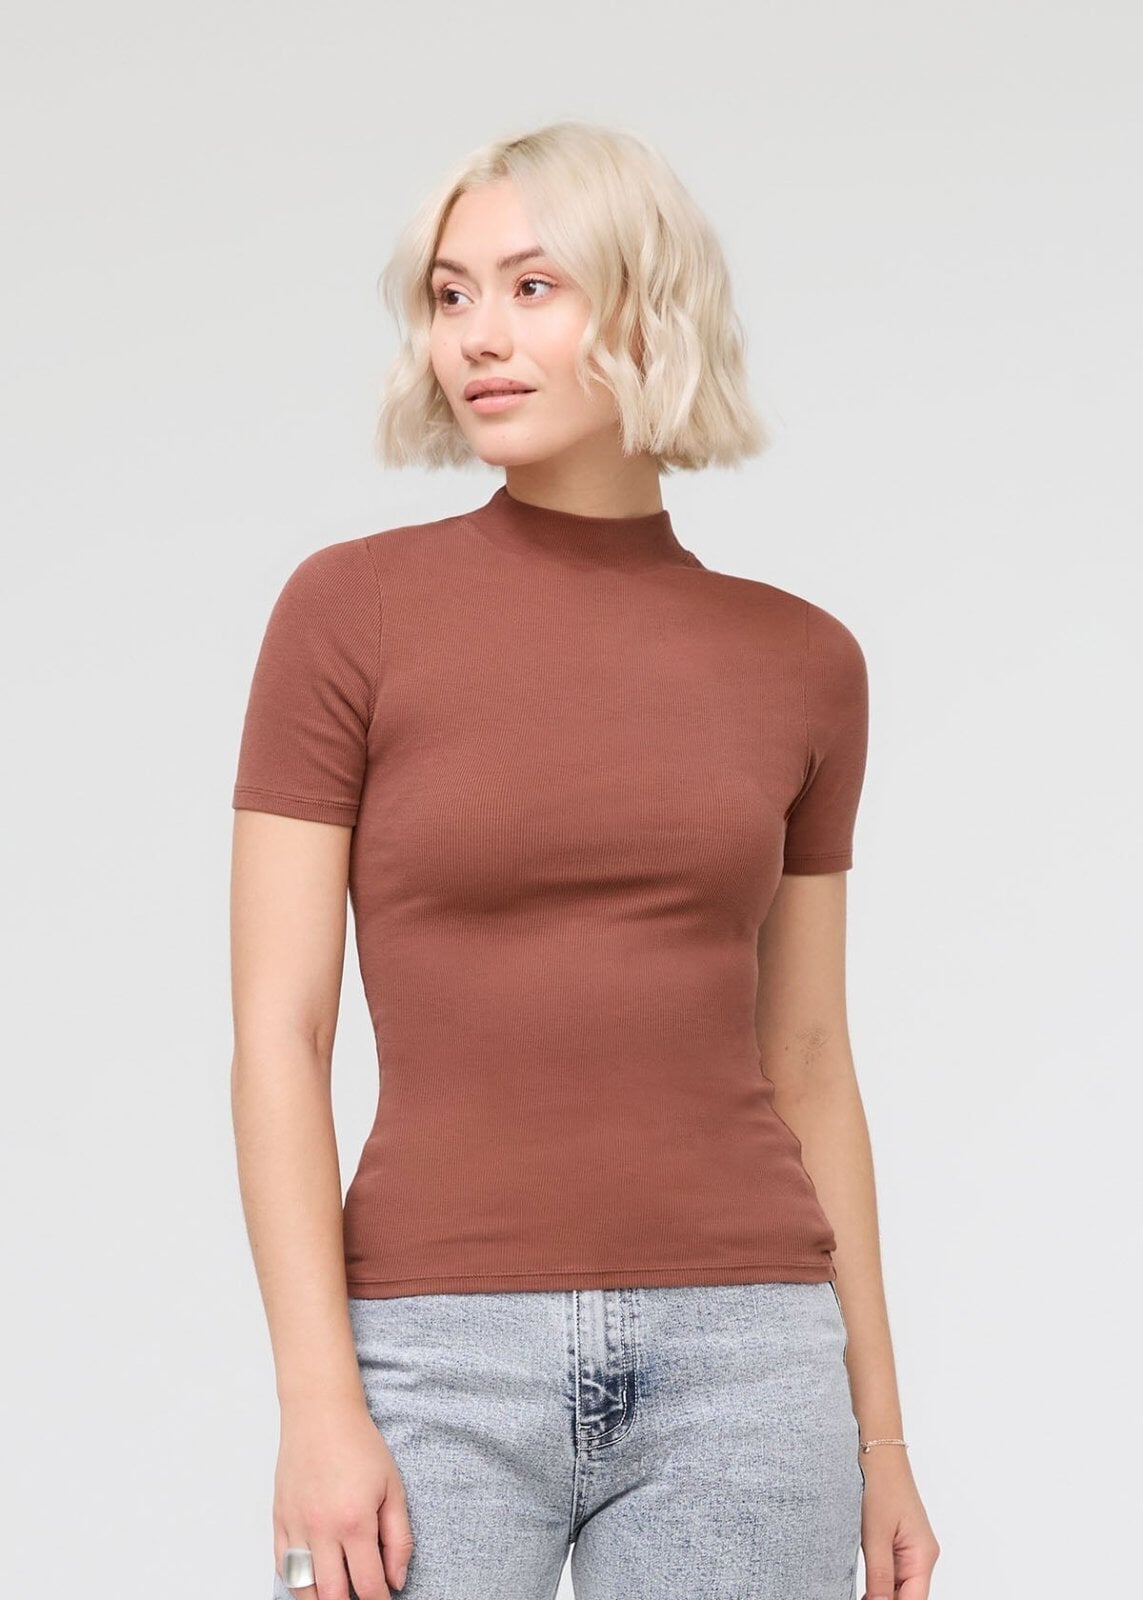 Calvin Klein - cropped gym t-shirt - women - dstore online